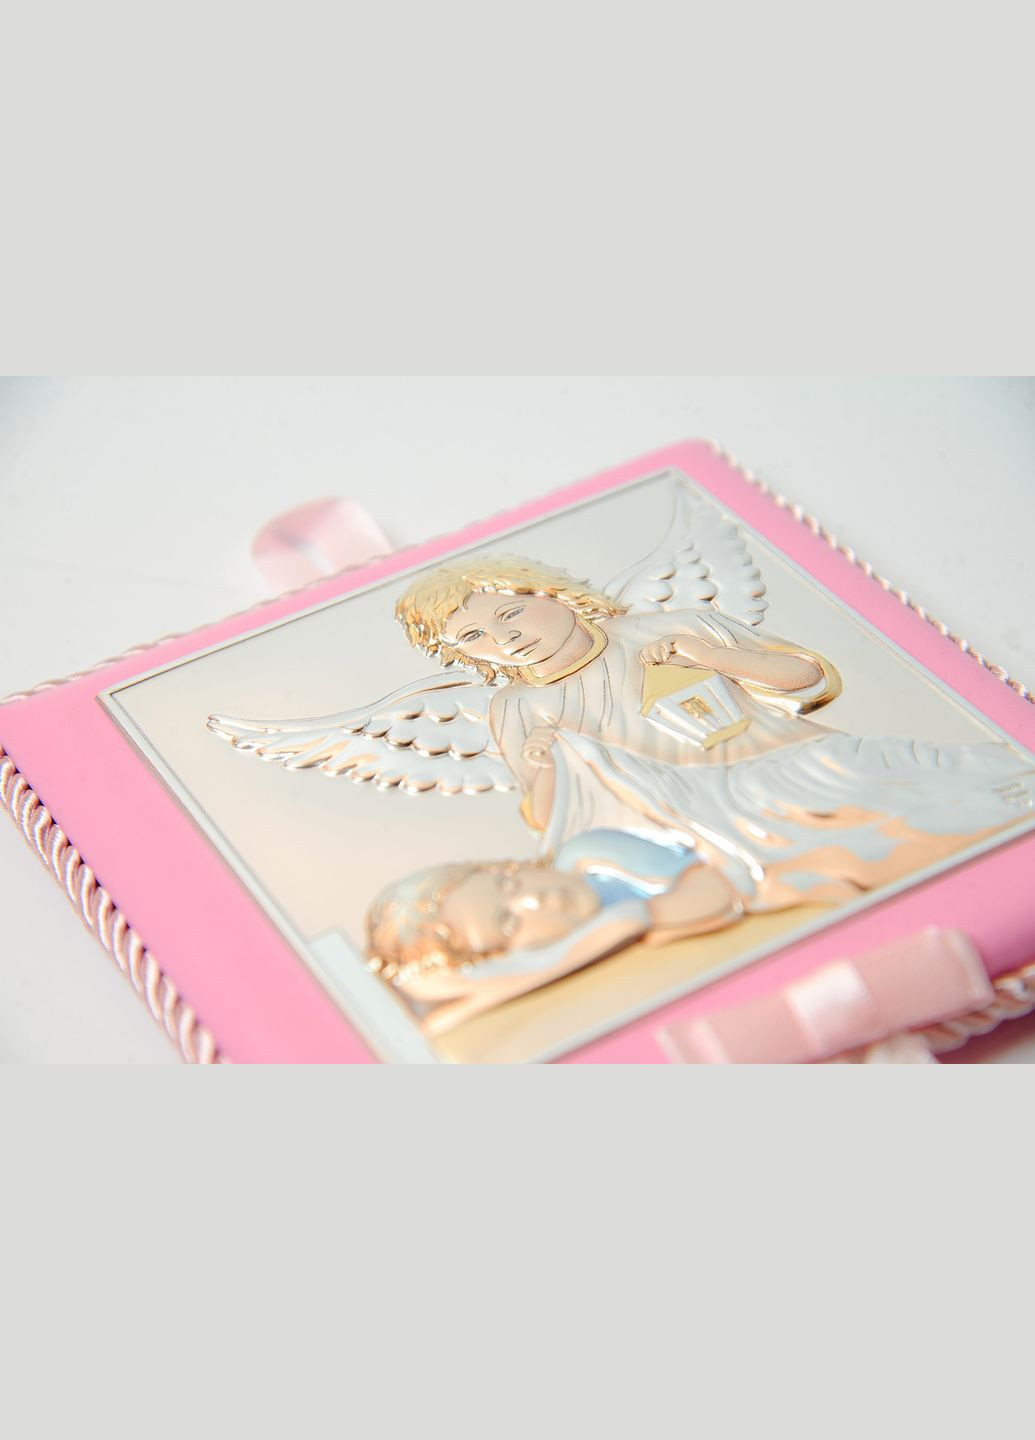 Серебряная детская иконка Ангел Хранитель 10,5х10,5 см на розовой подушечке с музыкой покрытый эмалью Prince Silvero (266265971)